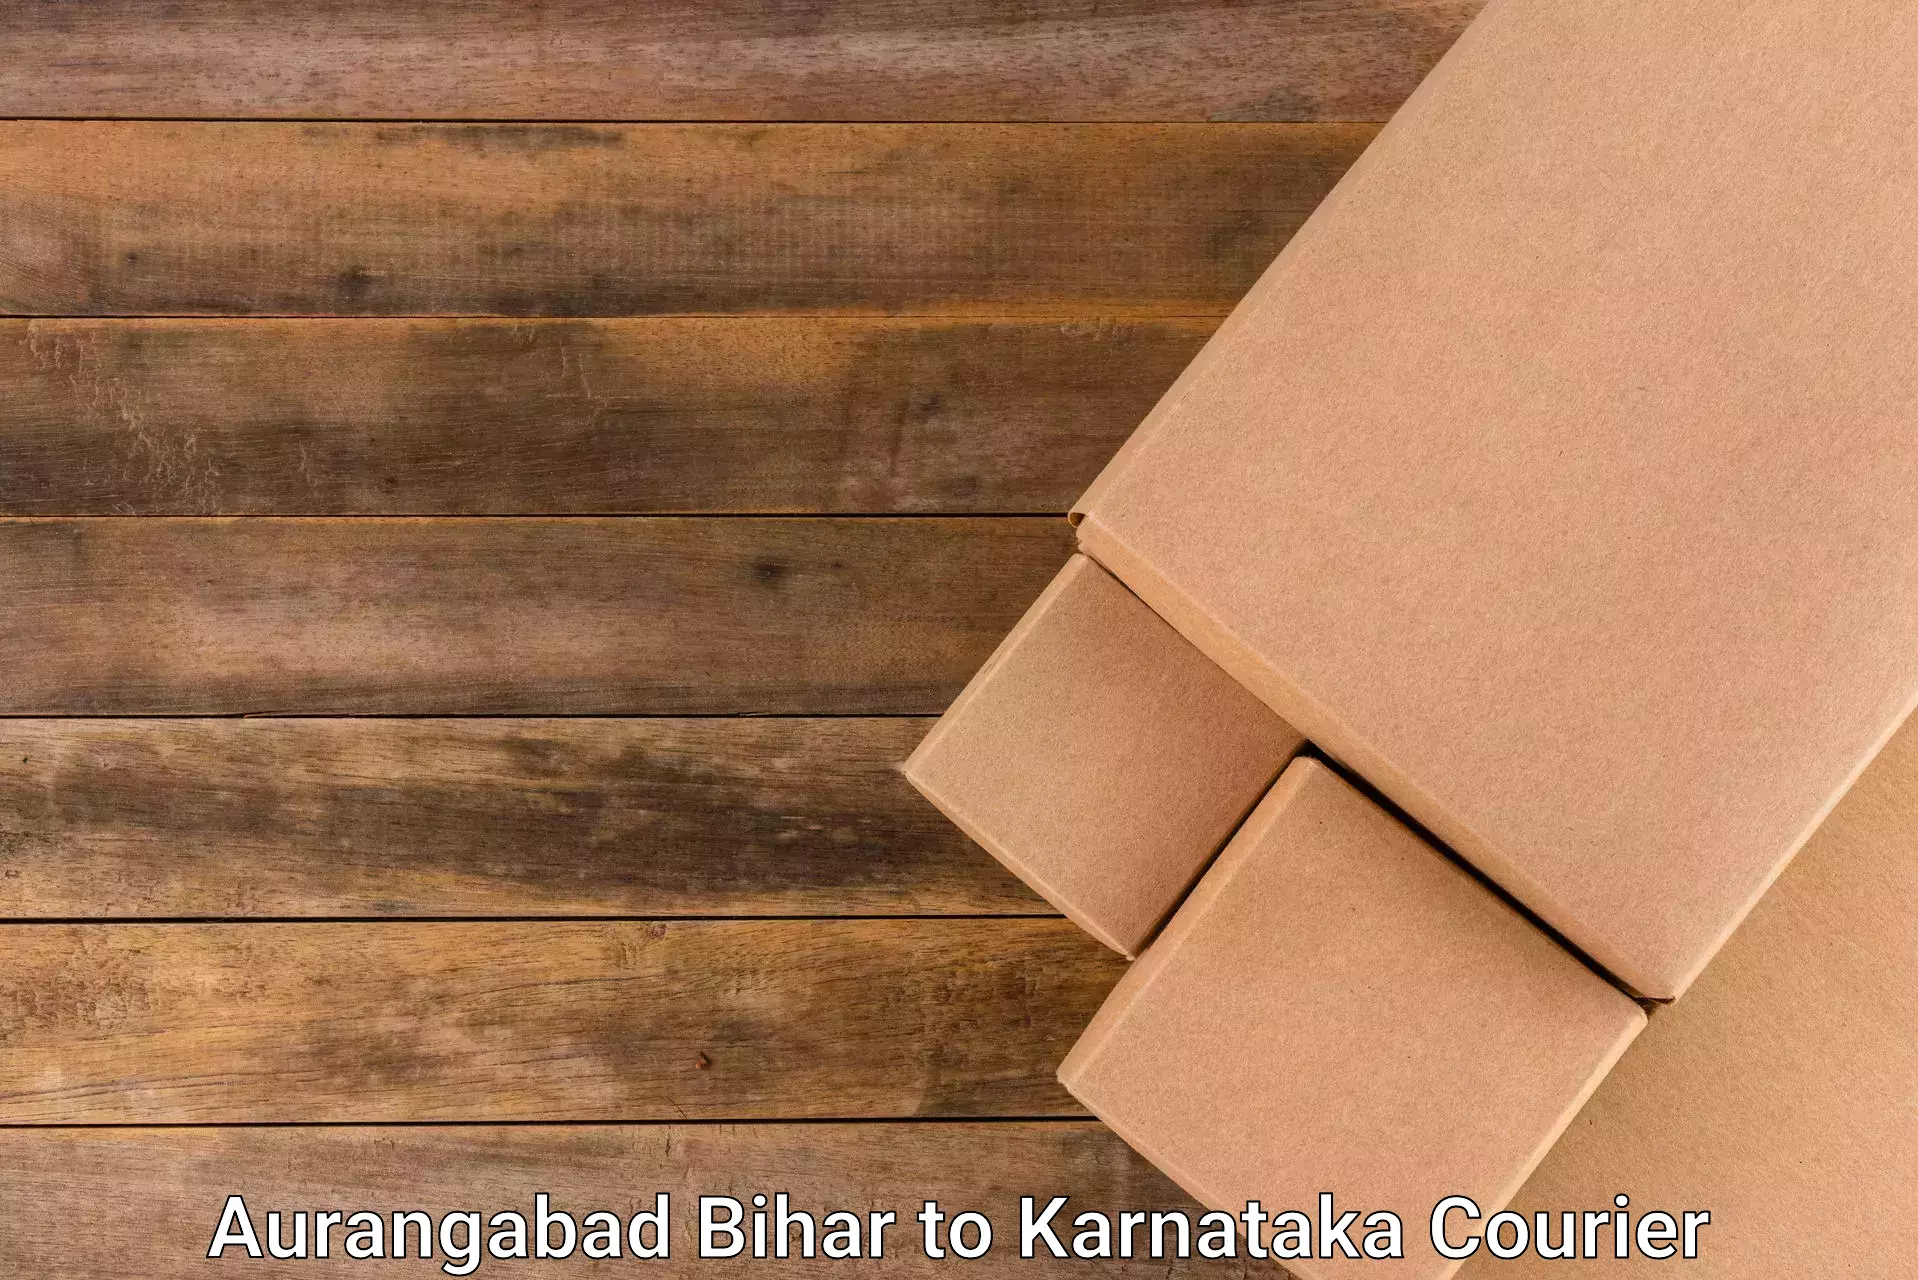 Quality courier partnerships Aurangabad Bihar to Chikkamagaluru